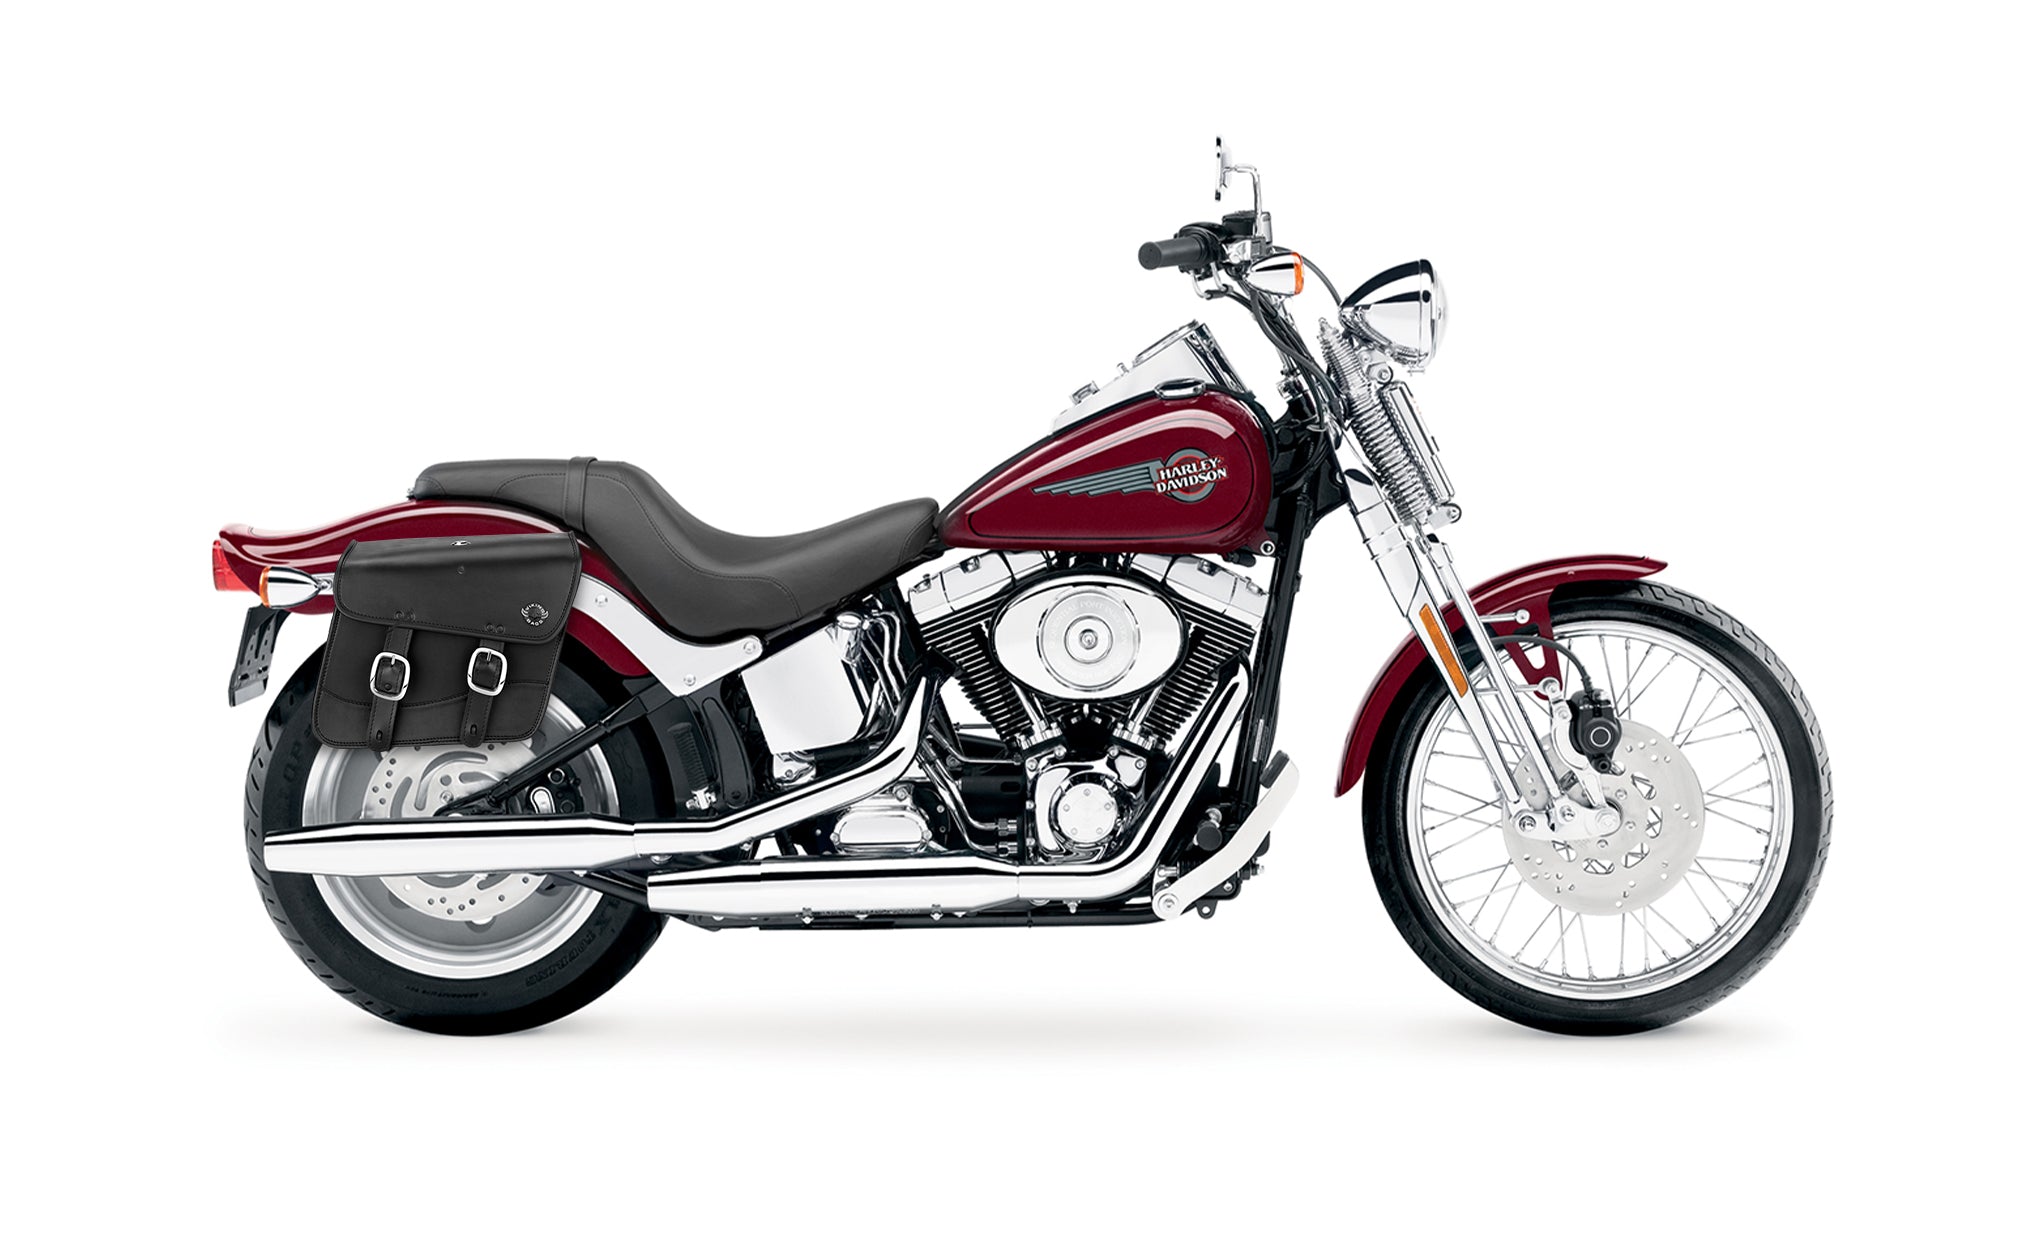 Viking Thor Medium Leather Motorcycle Saddlebags For Harley Davidson Softail Springer Fxsts I on Bike Photo @expand